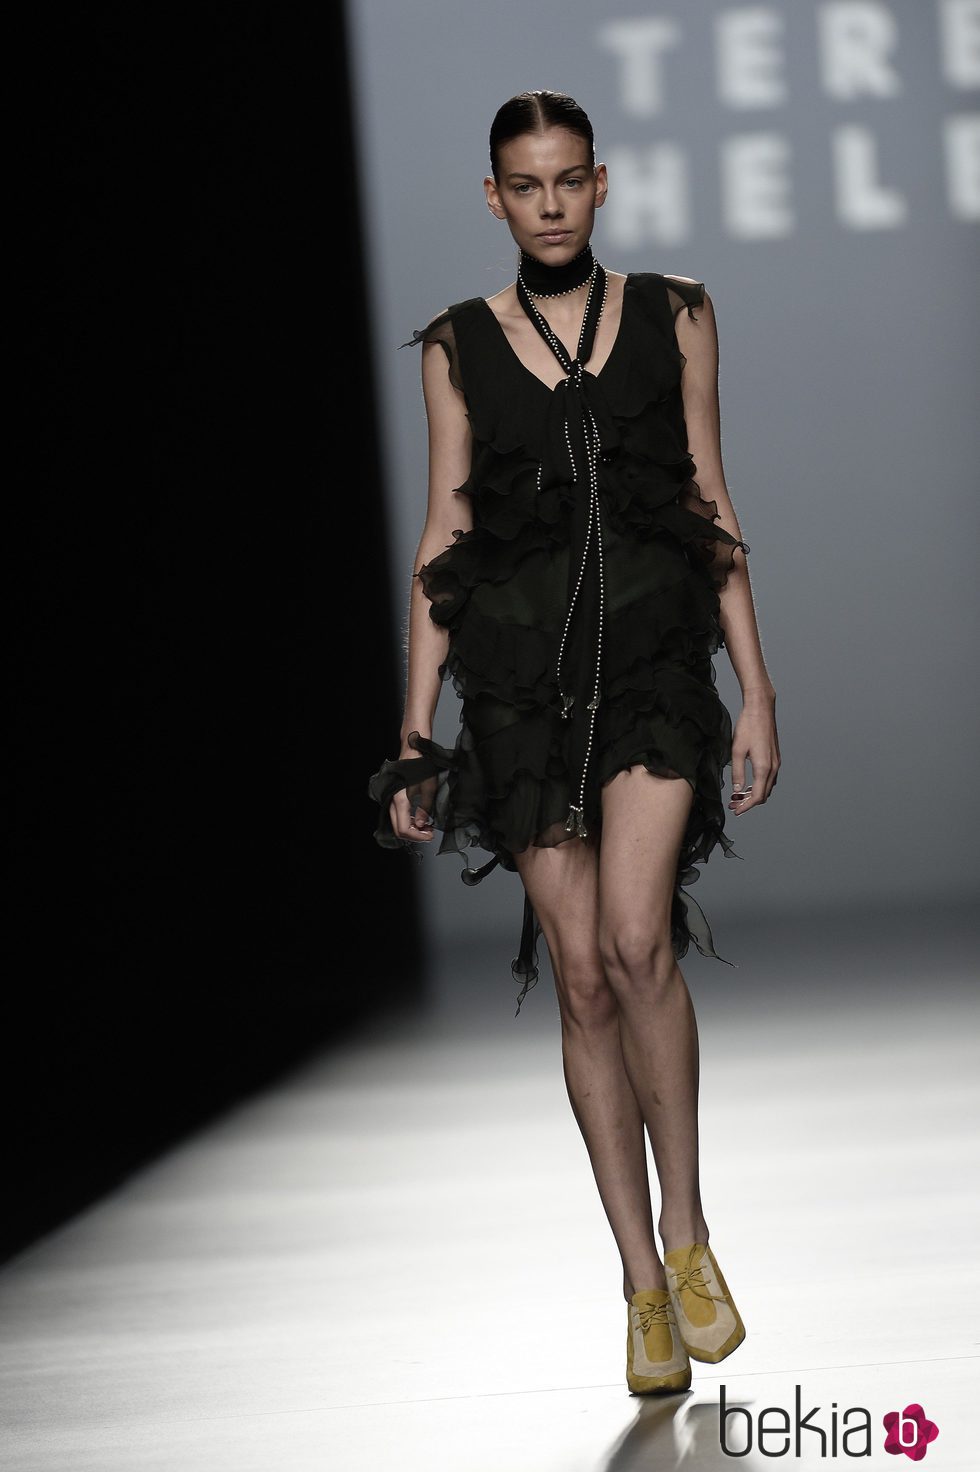 Vestido negro de la colección de primavera/verano 2016 de Teresa Helbig en Madrid Fashion Week